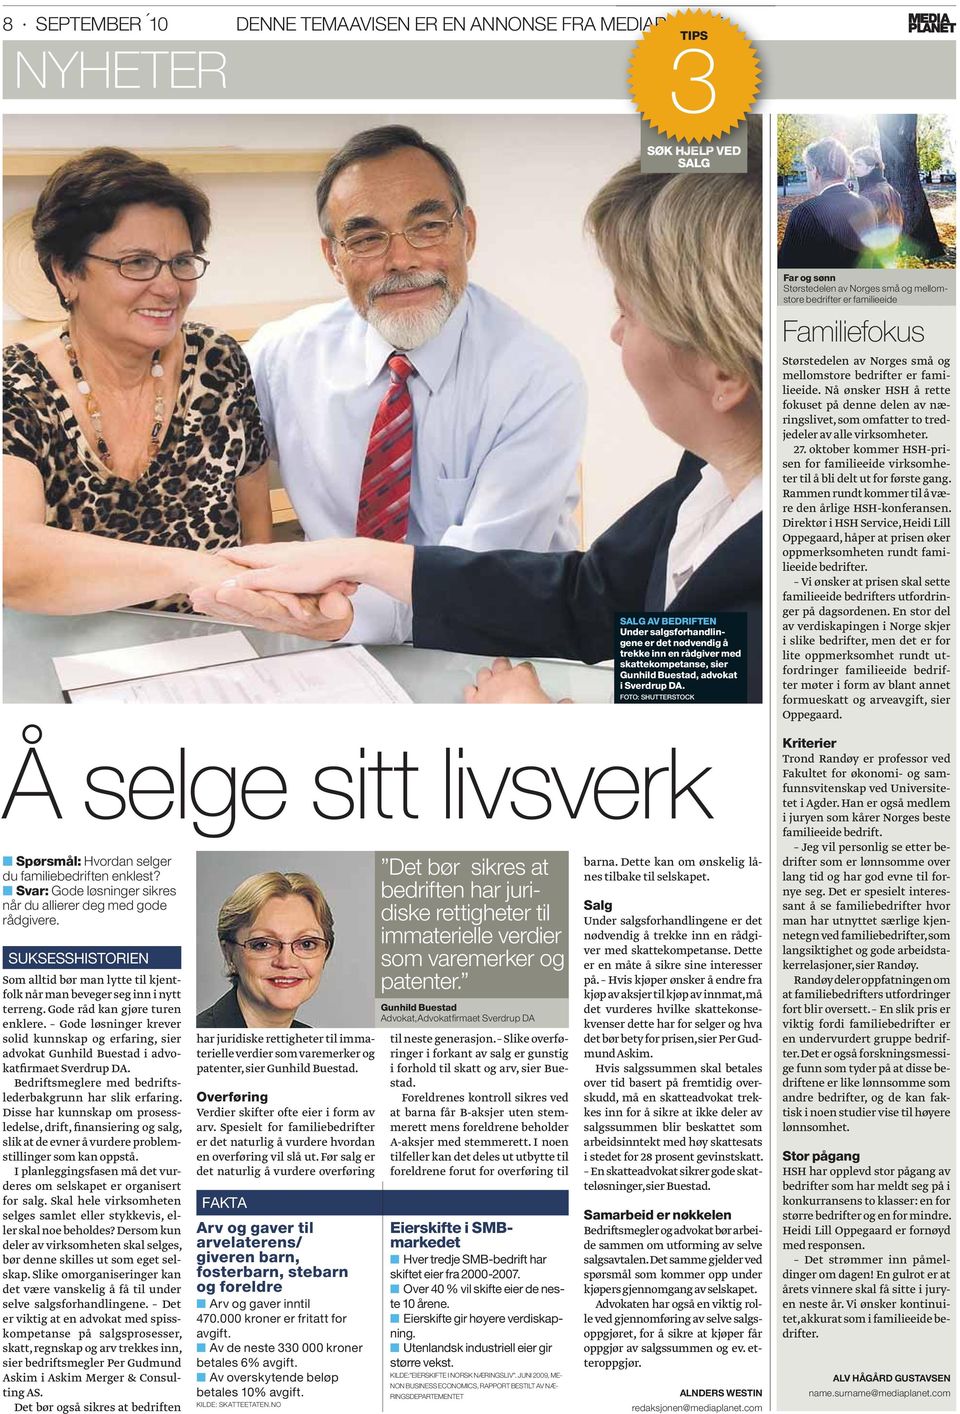 Gode løsninger krever solid kunnskap og erfaring, sier advokat Gunhild Buestad i advokatfirmaet Sverdrup DA. Bedriftsmeglere med bedriftslederbakgrunn har slik erfaring.